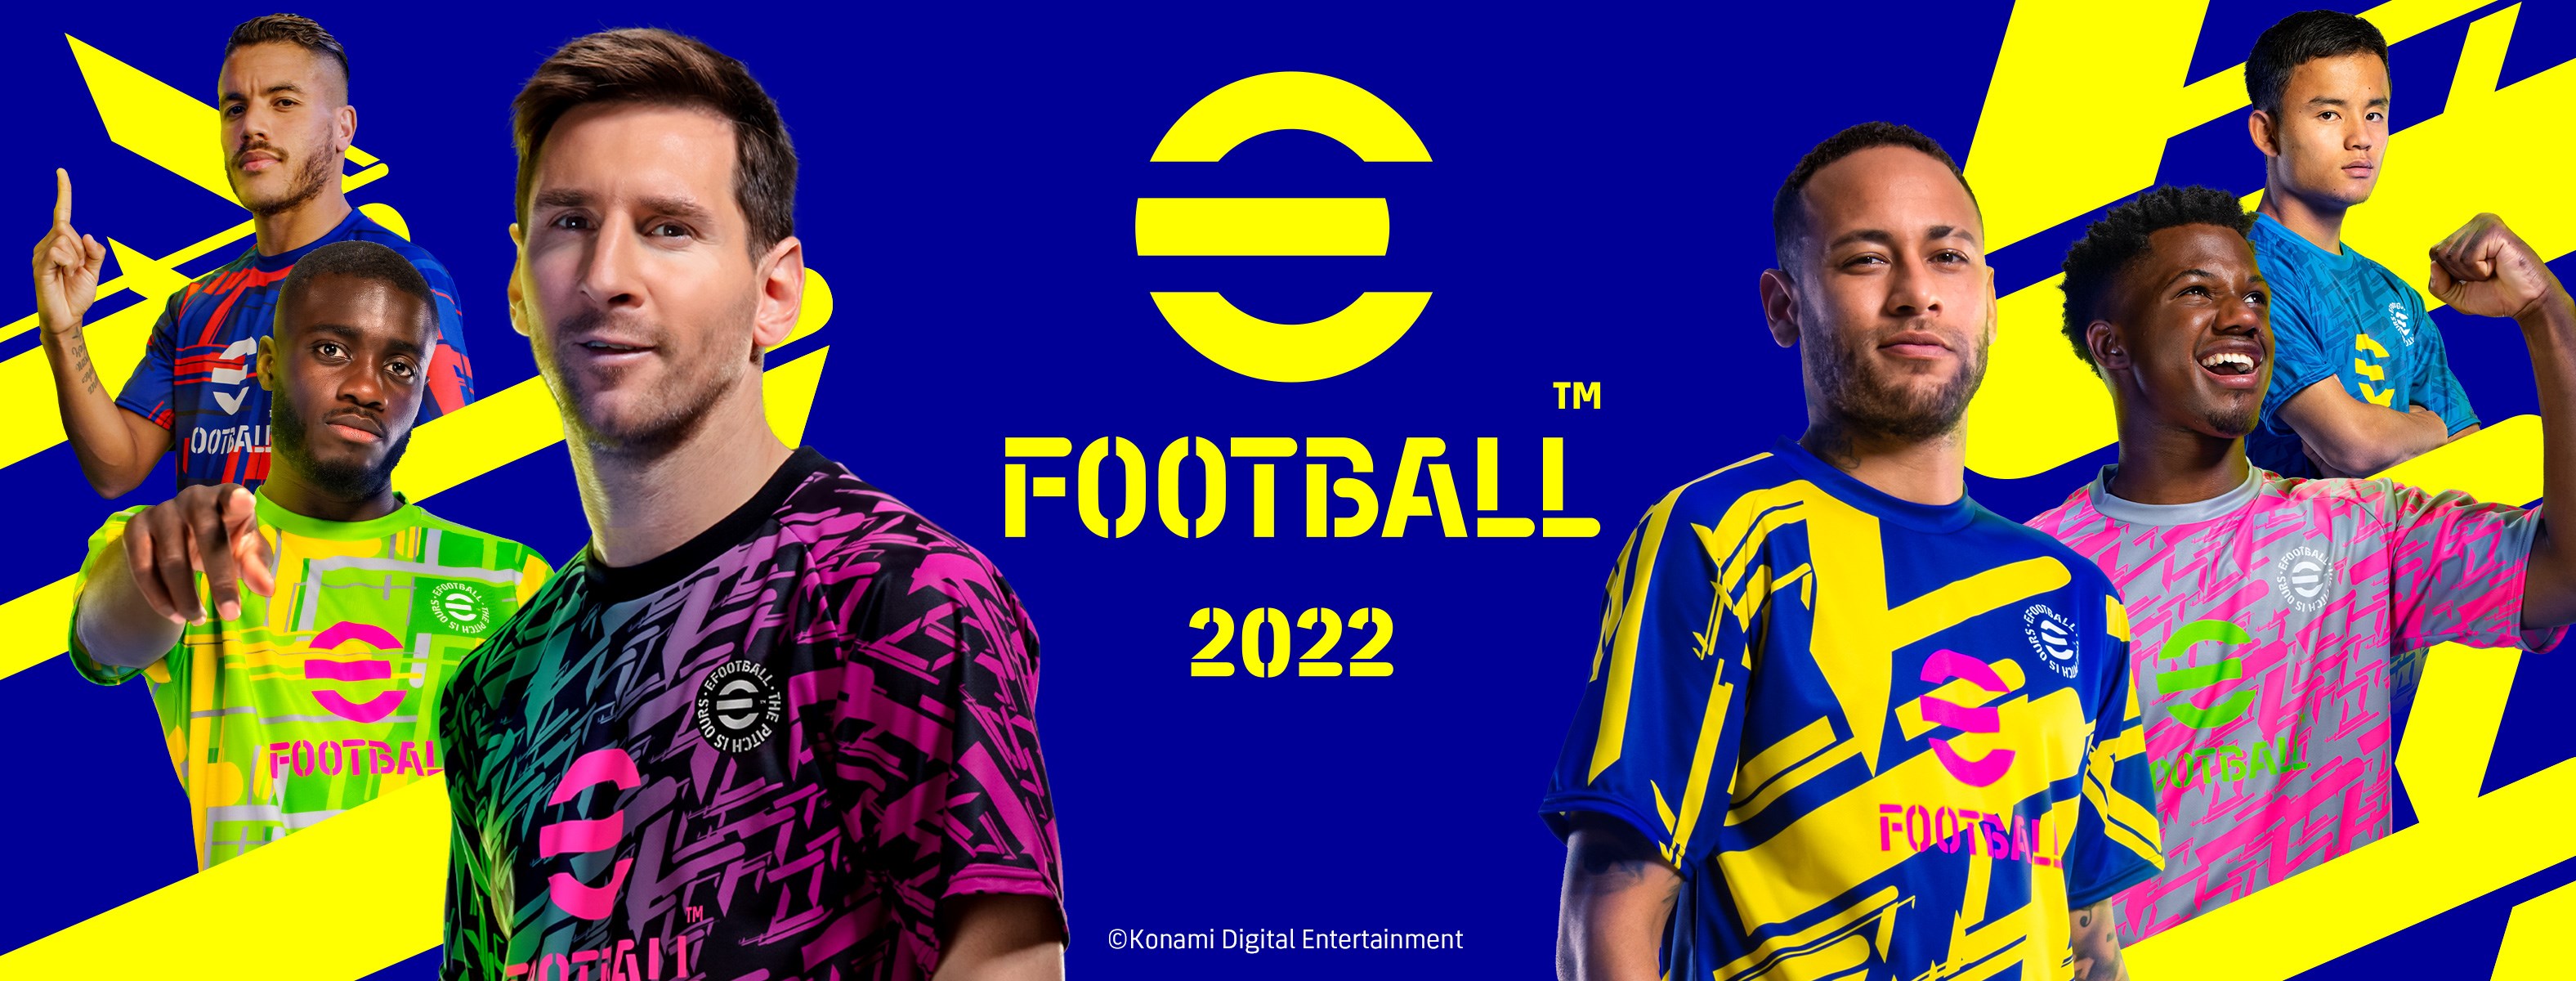 eFootball 2022, ücretsiz olarak çıkışını yaptı